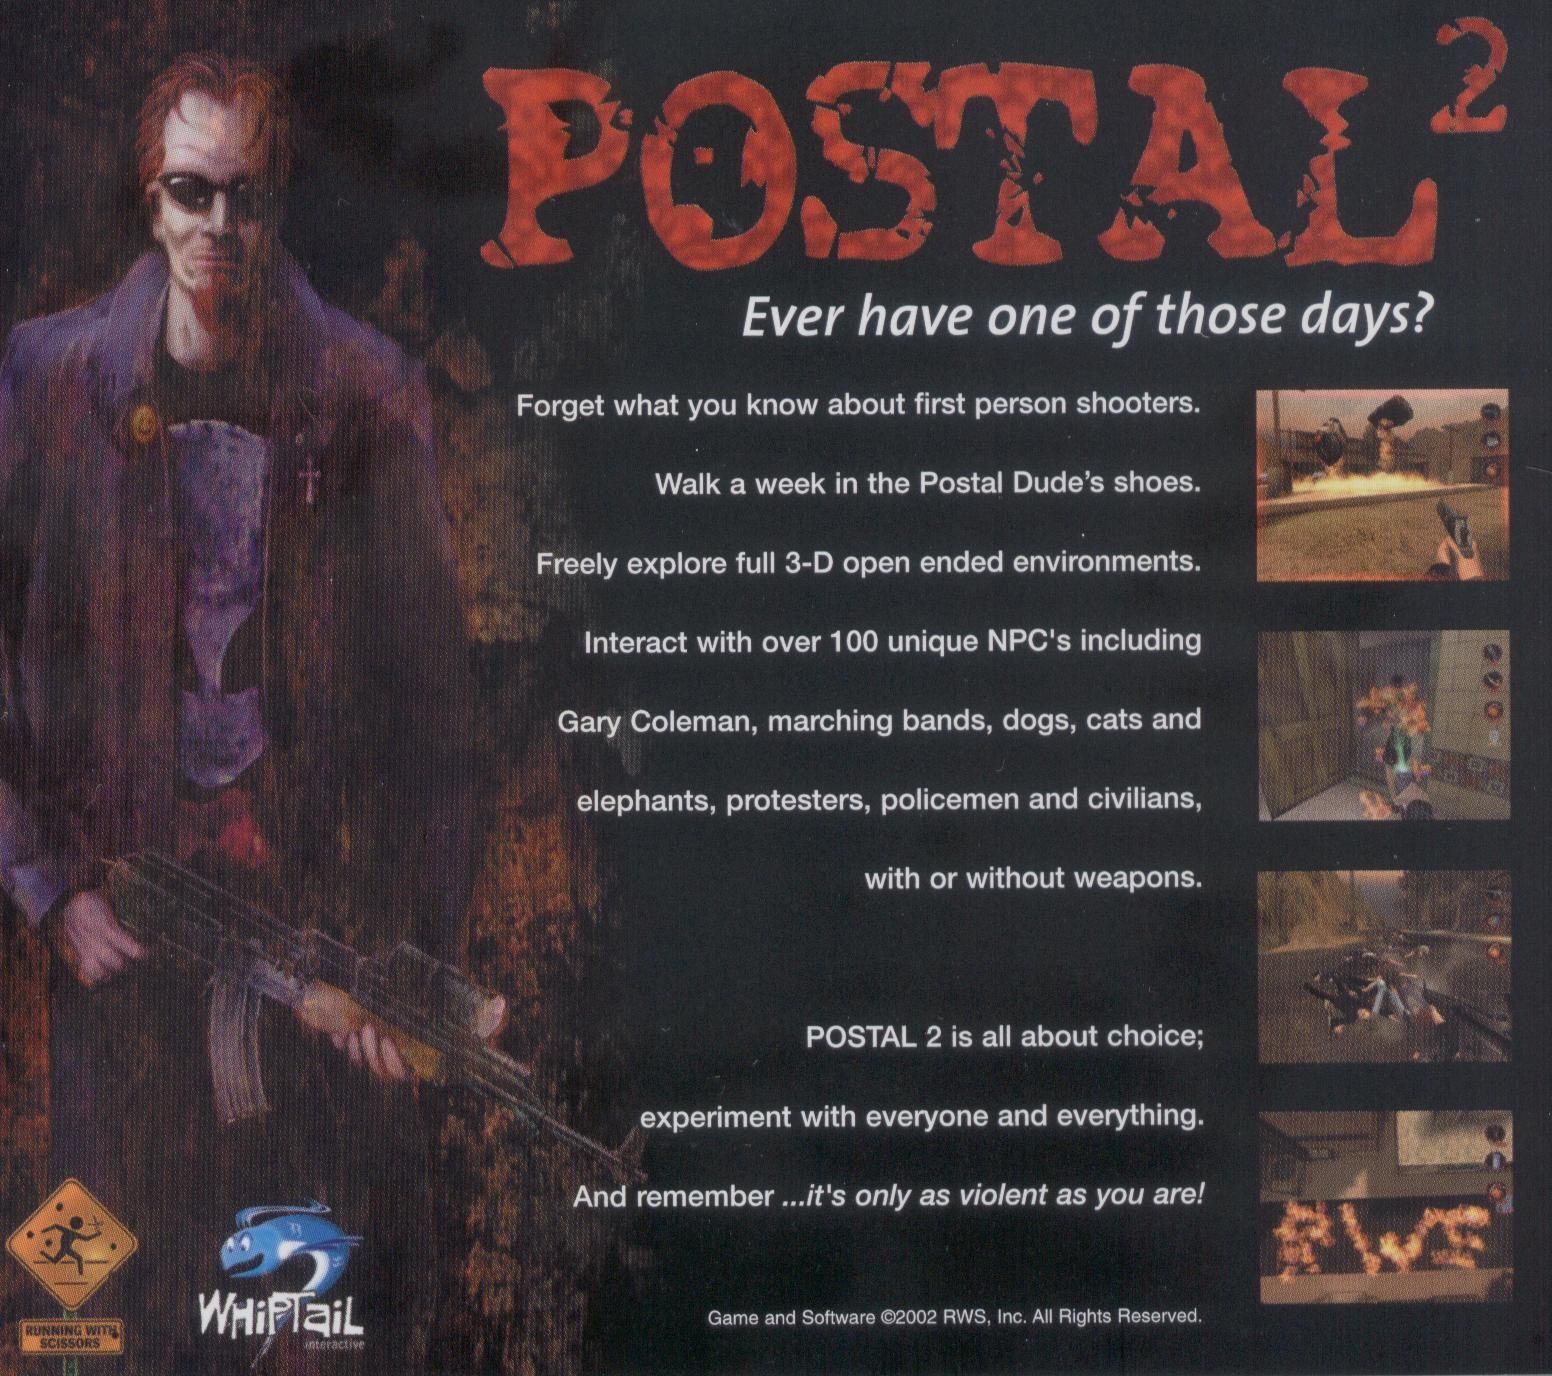 Postal 2 awp delete review скачать на торрент фото 47